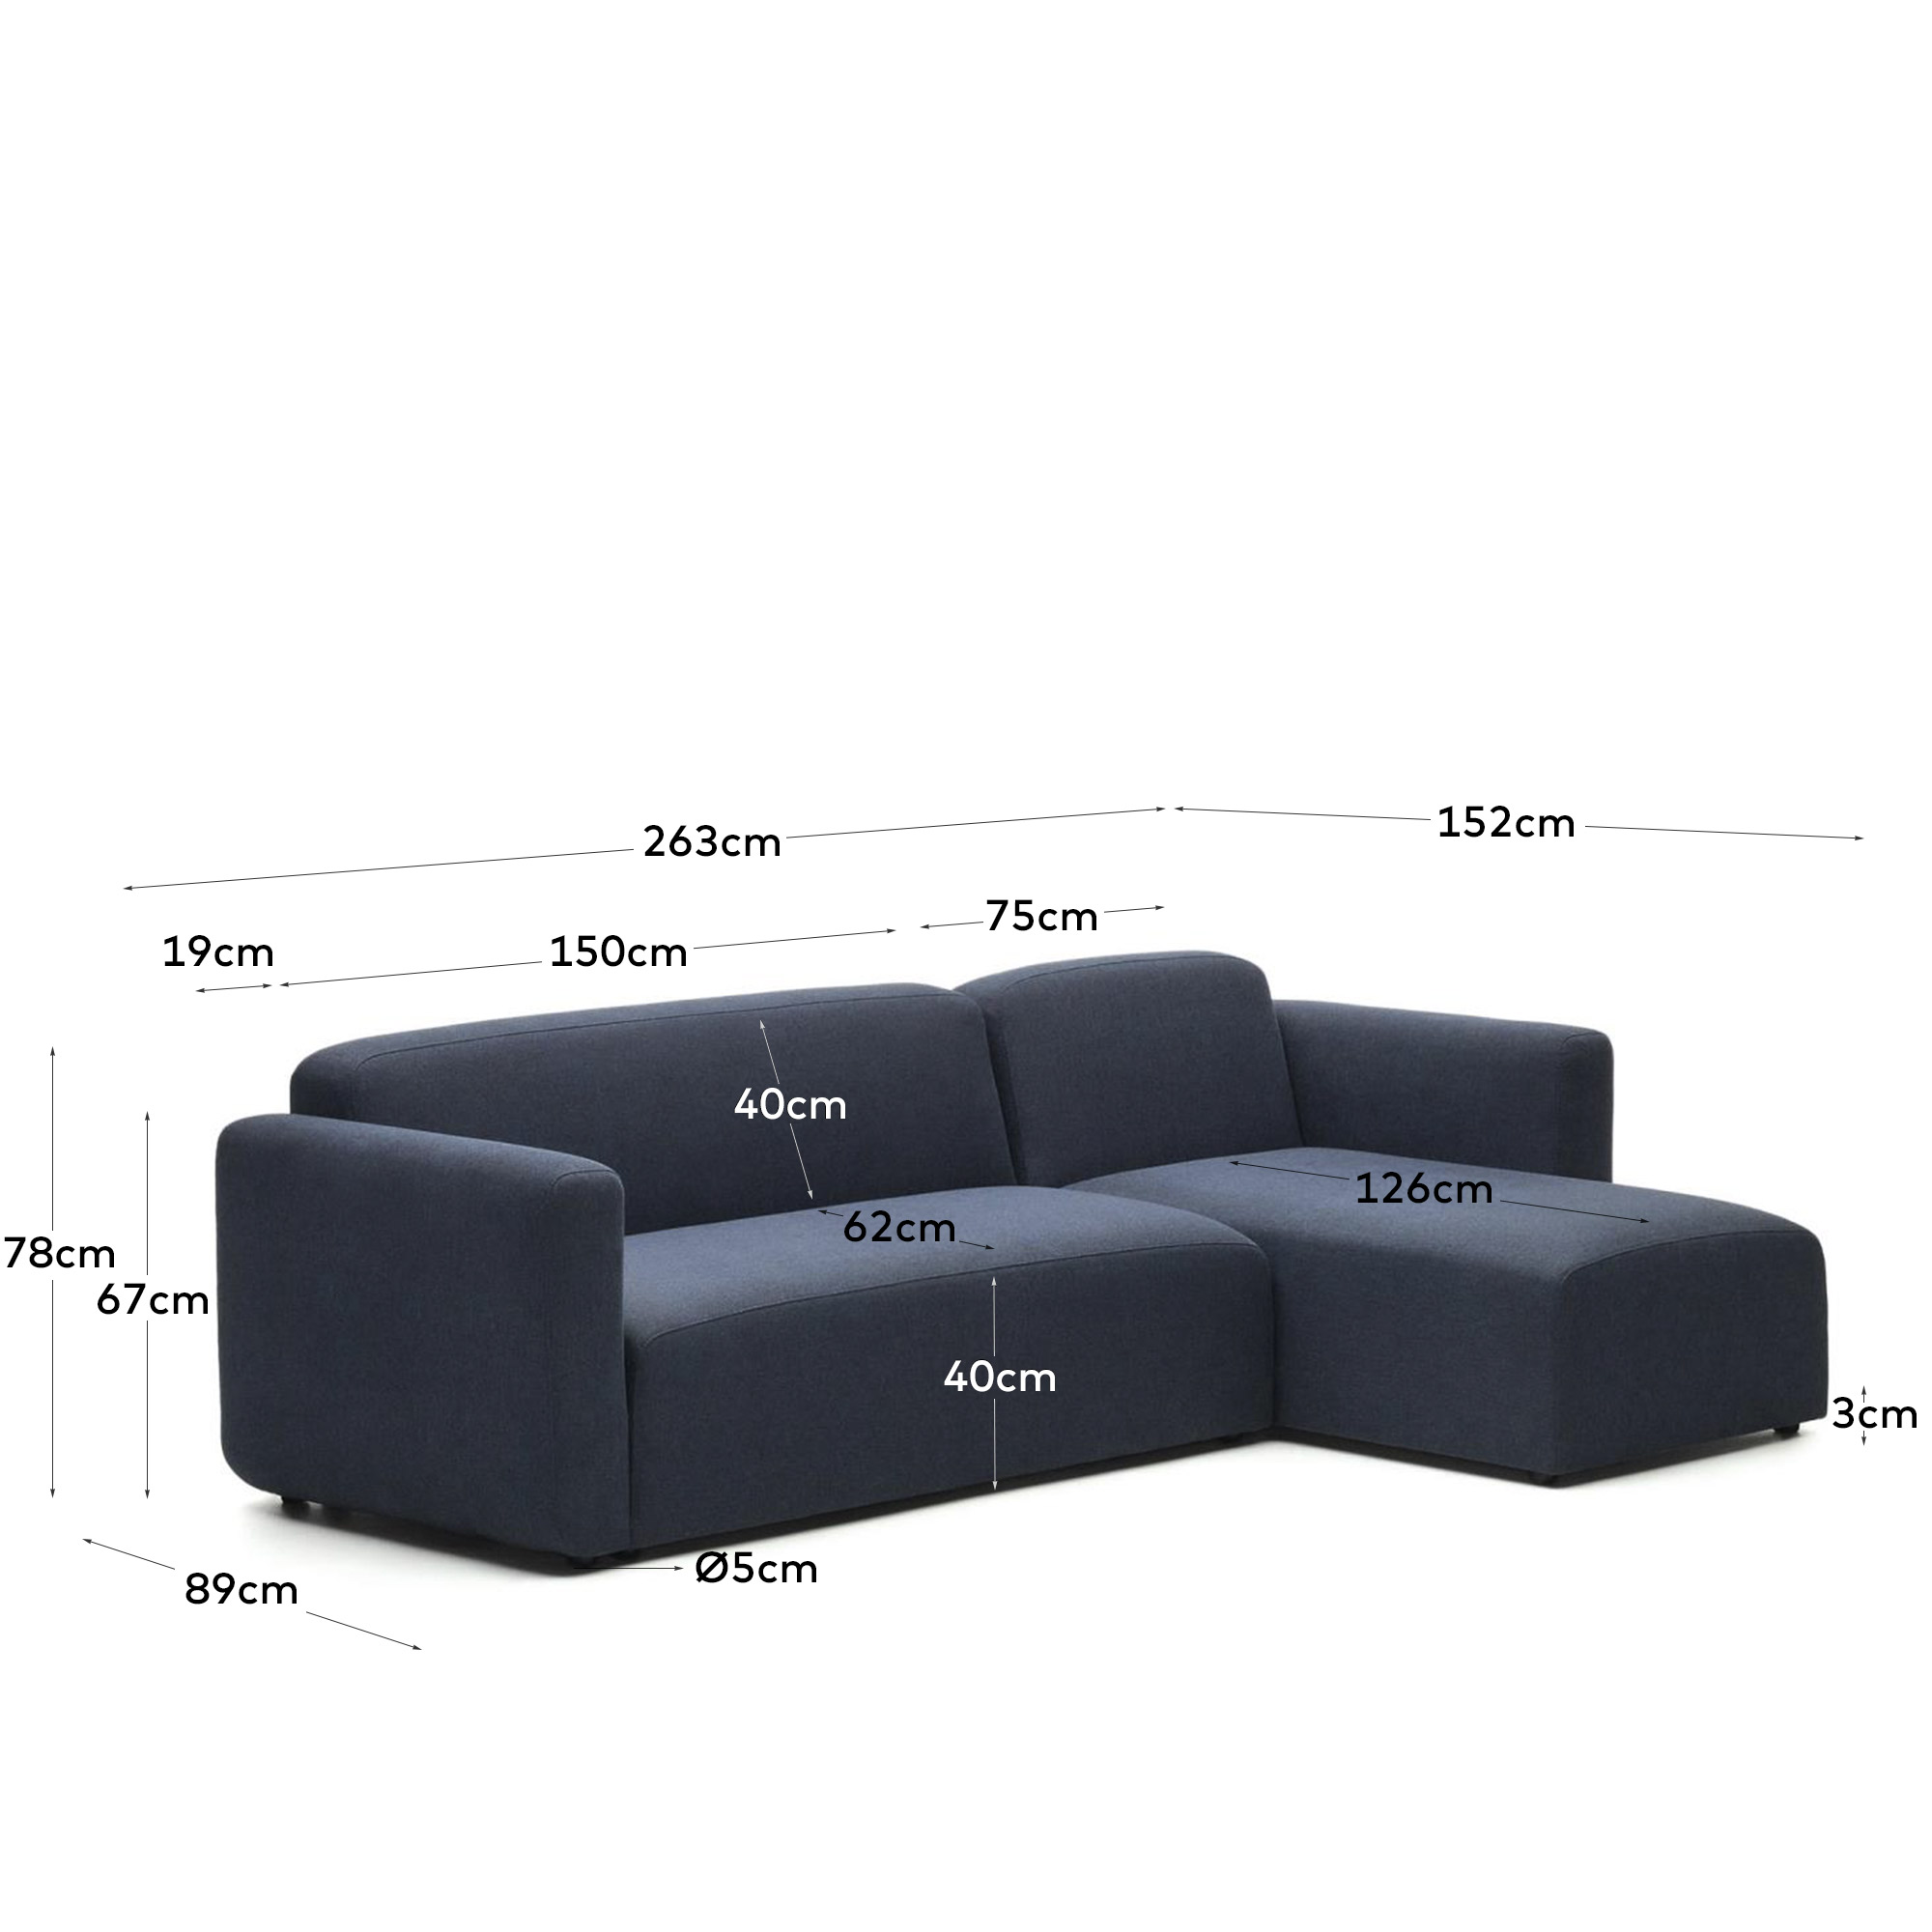 Модульный диван La Forma Neom синий правый / левый шезлонг 263 см 157119